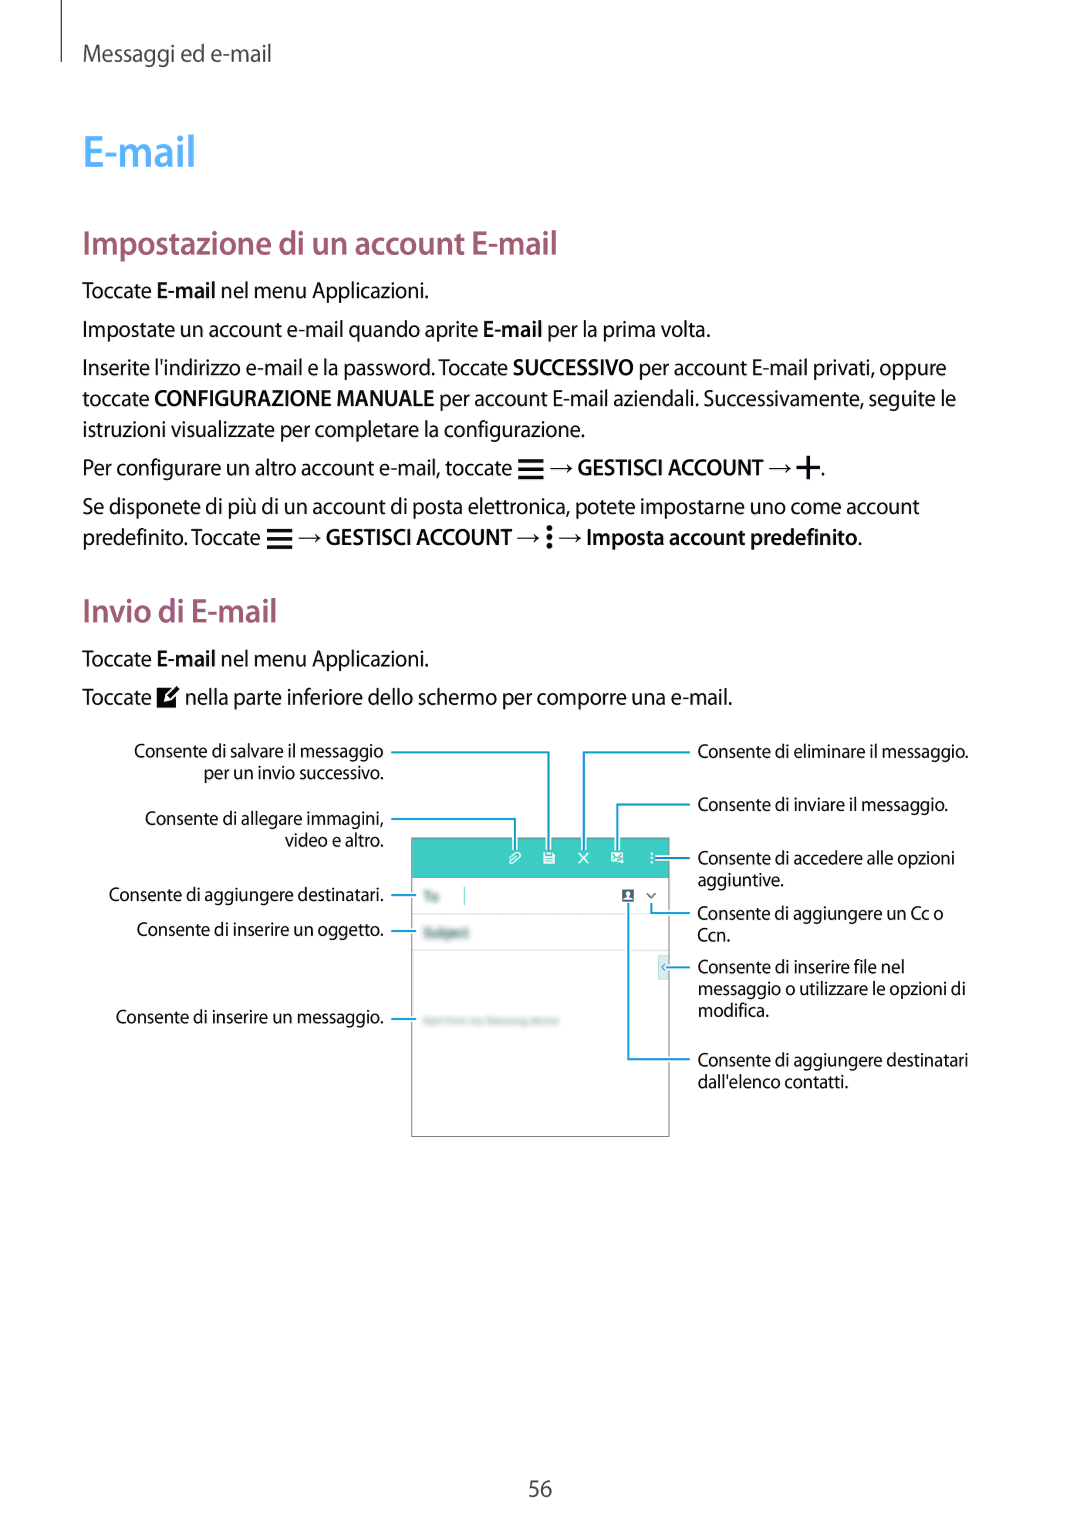 Samsung SM-A300FZDUDBT, SM-A300FZDUXEO, SM-A300FZWUDBT manual Mail, Impostazione di un account E-mail, Invio di E-mail 